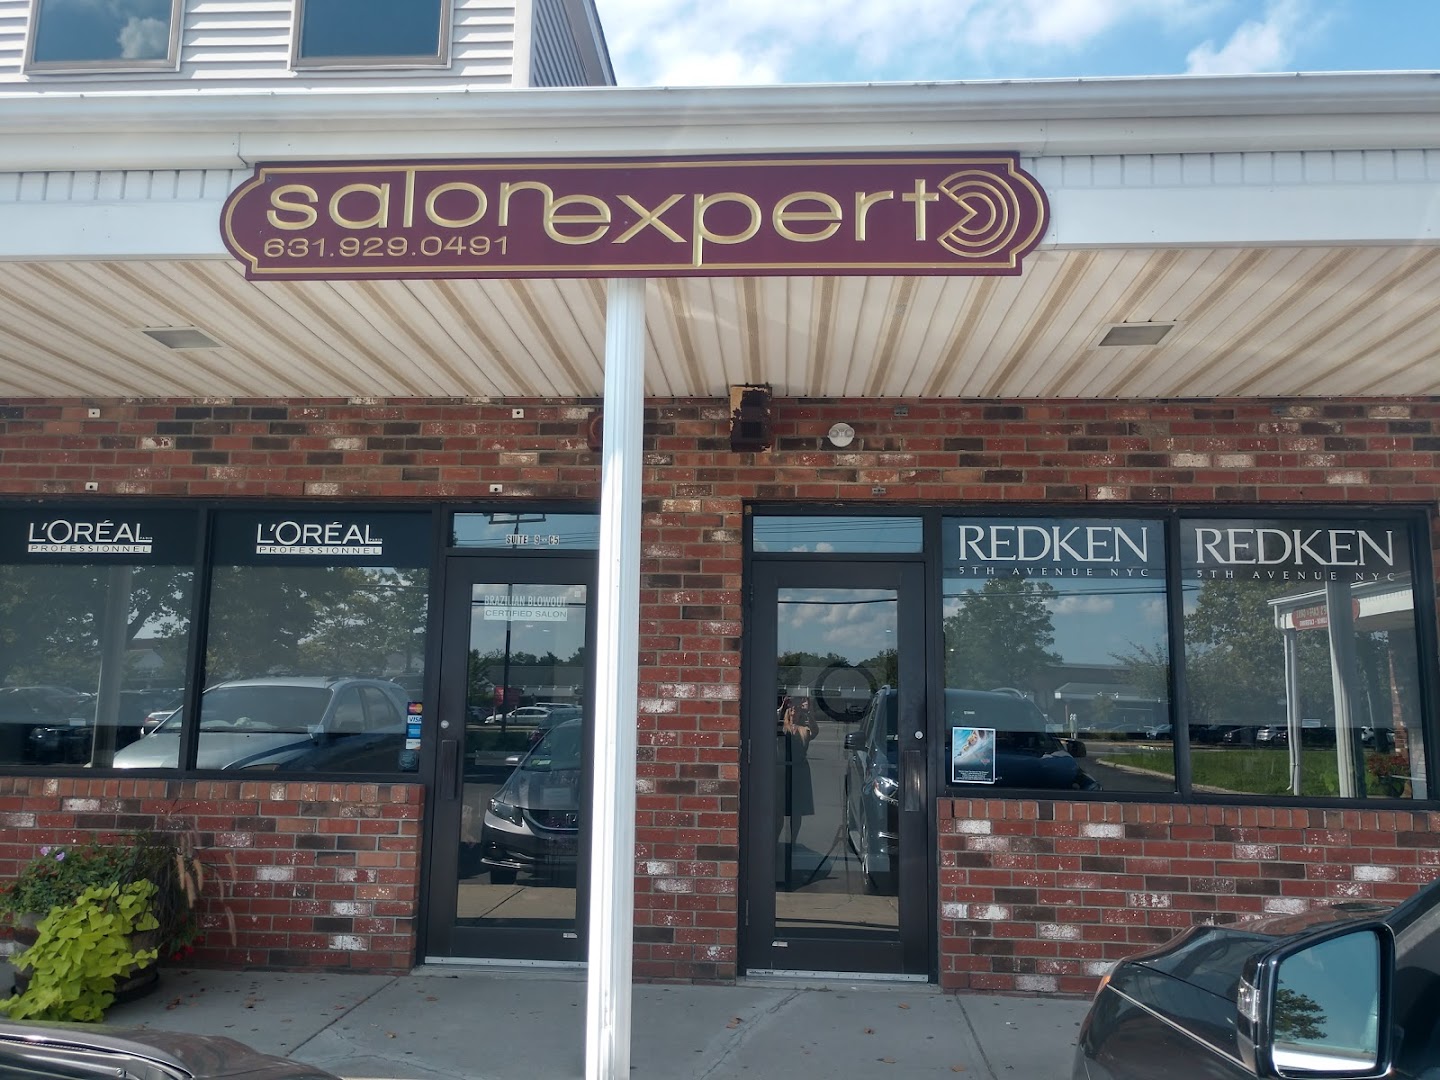 Salon Expert